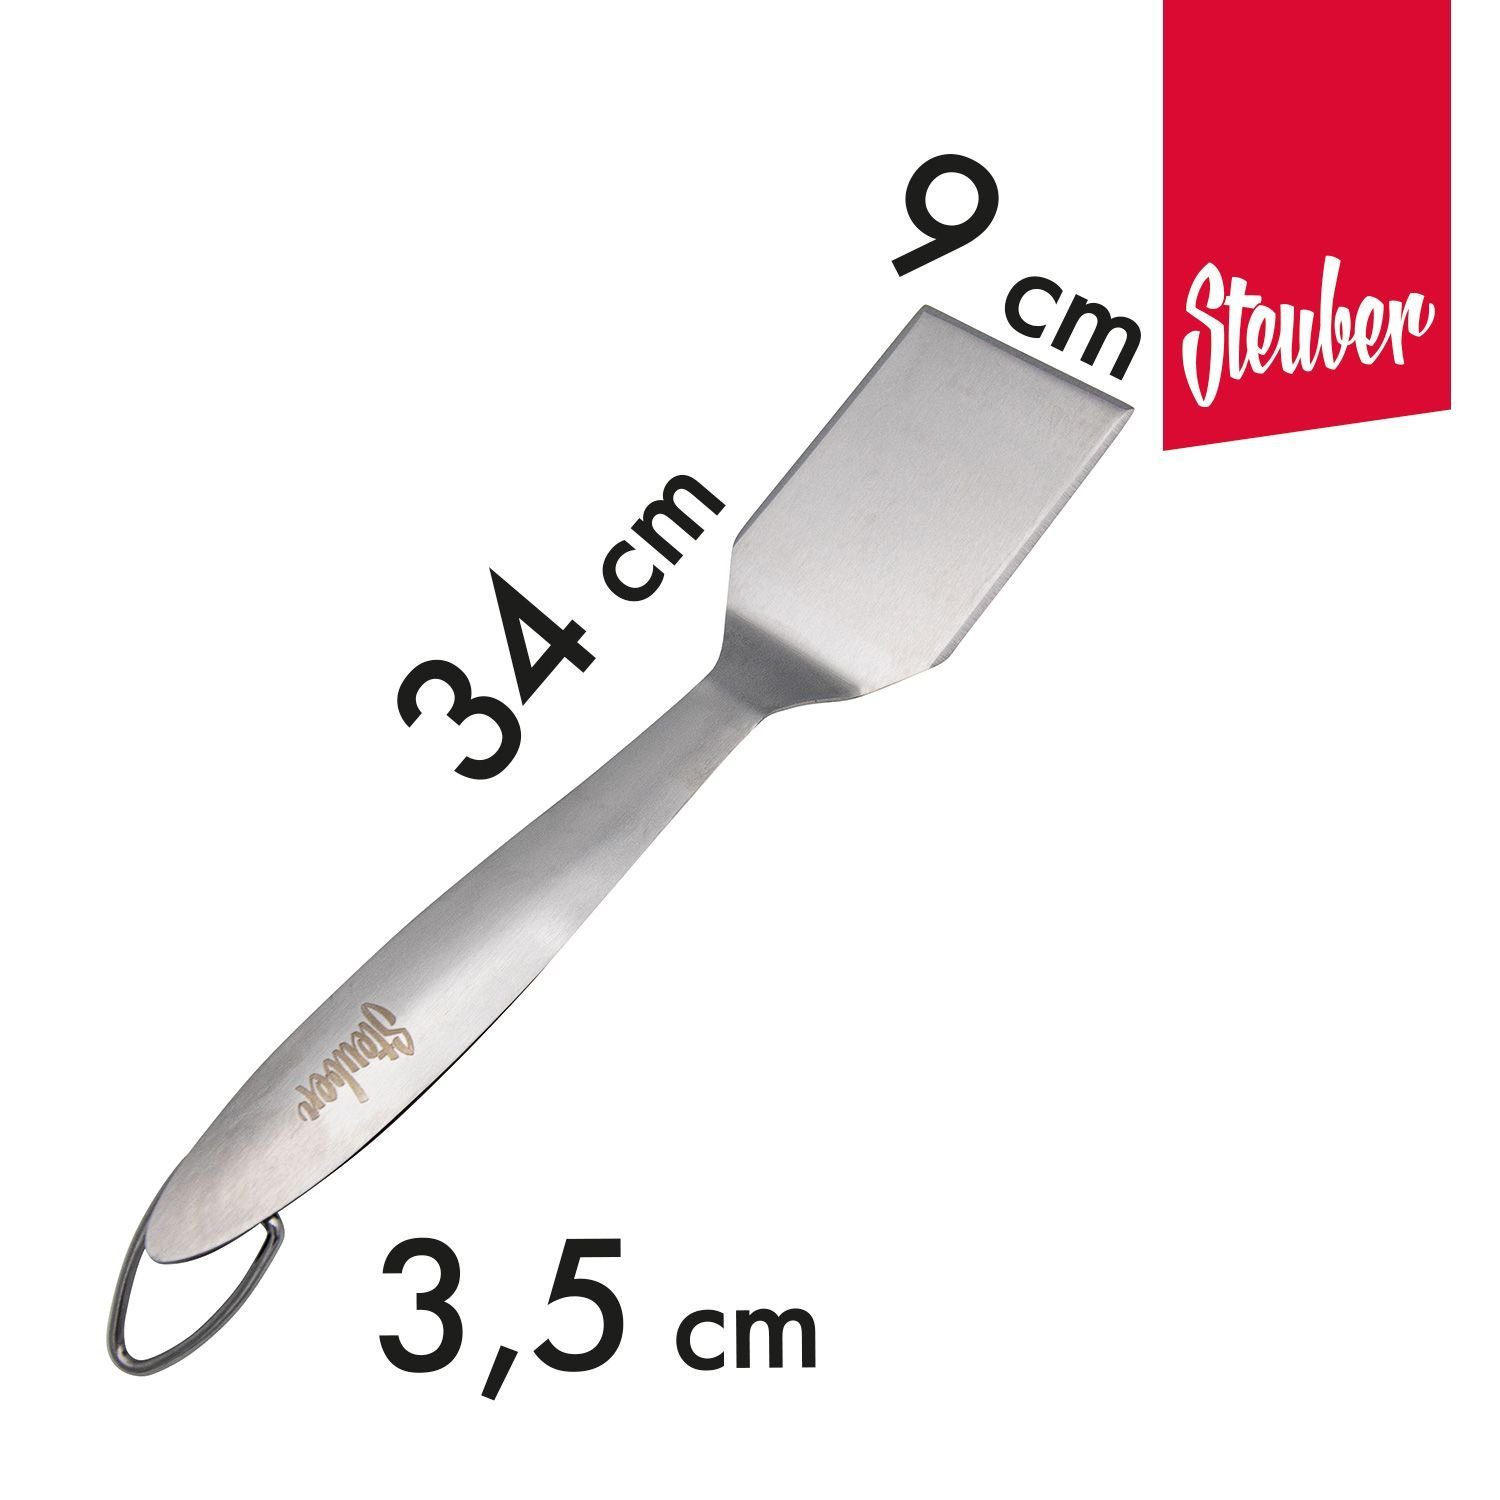 Grillwender Fläche Premium präziser Steuber Line, 6.5 Grillwender cm